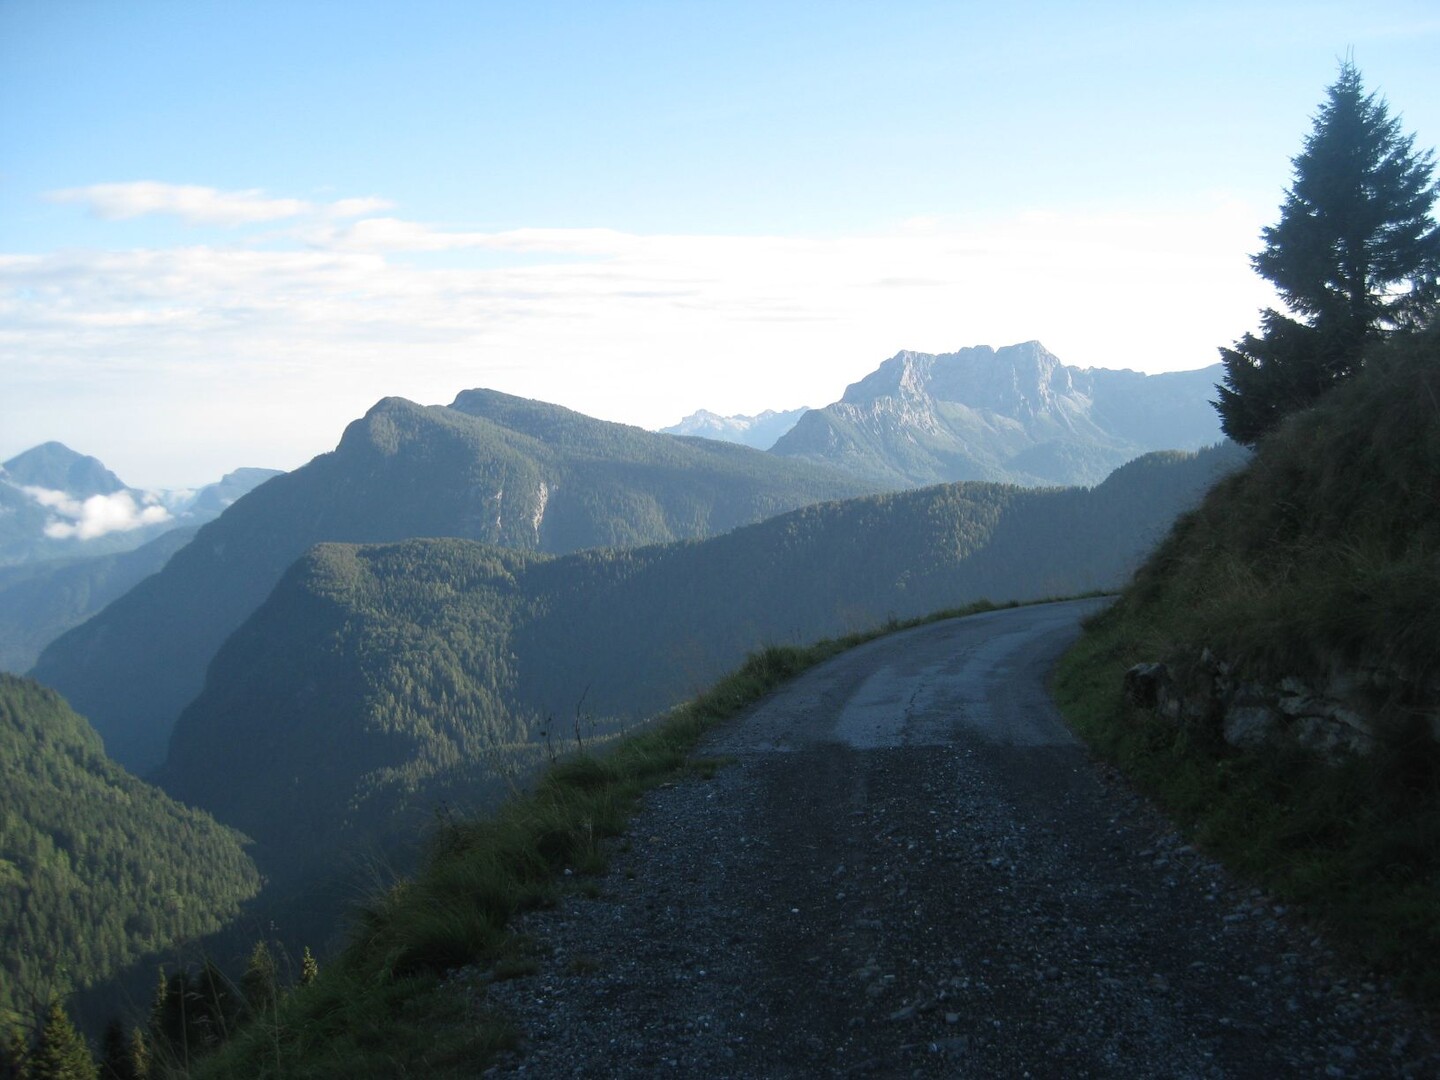 Tolles Strässchen in grosser Höhe: Blicke bis zu den Dolomiten